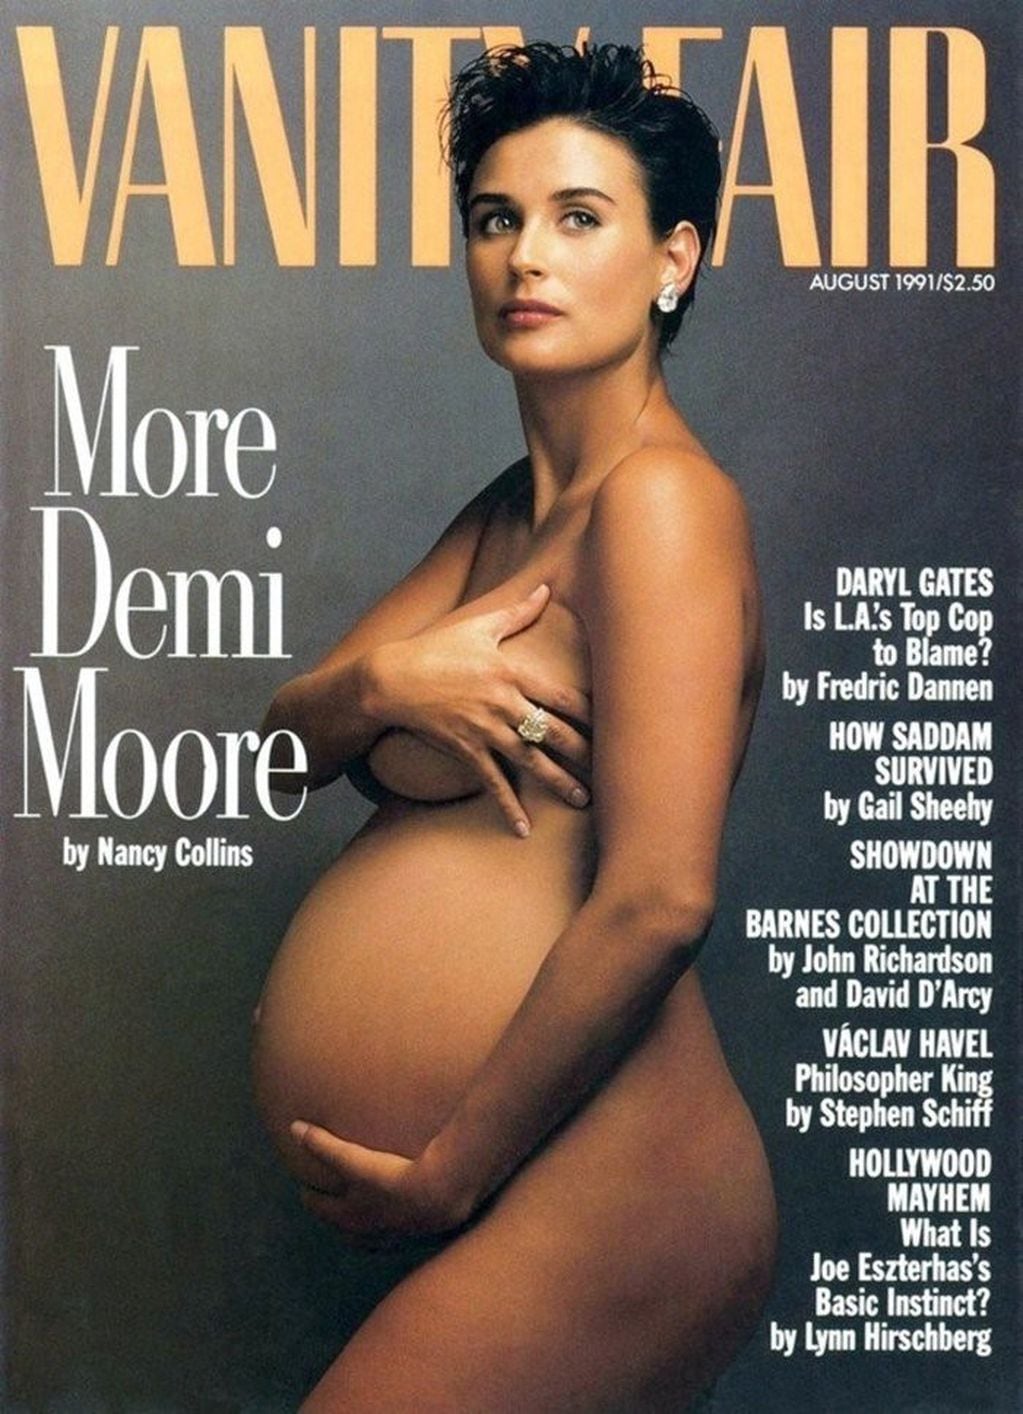 En 1991, Demi Moore posó para una tapa de la revista "Vanity Fair" cuando estaba embarazada y esperaba dar a luz a su segunda hija.